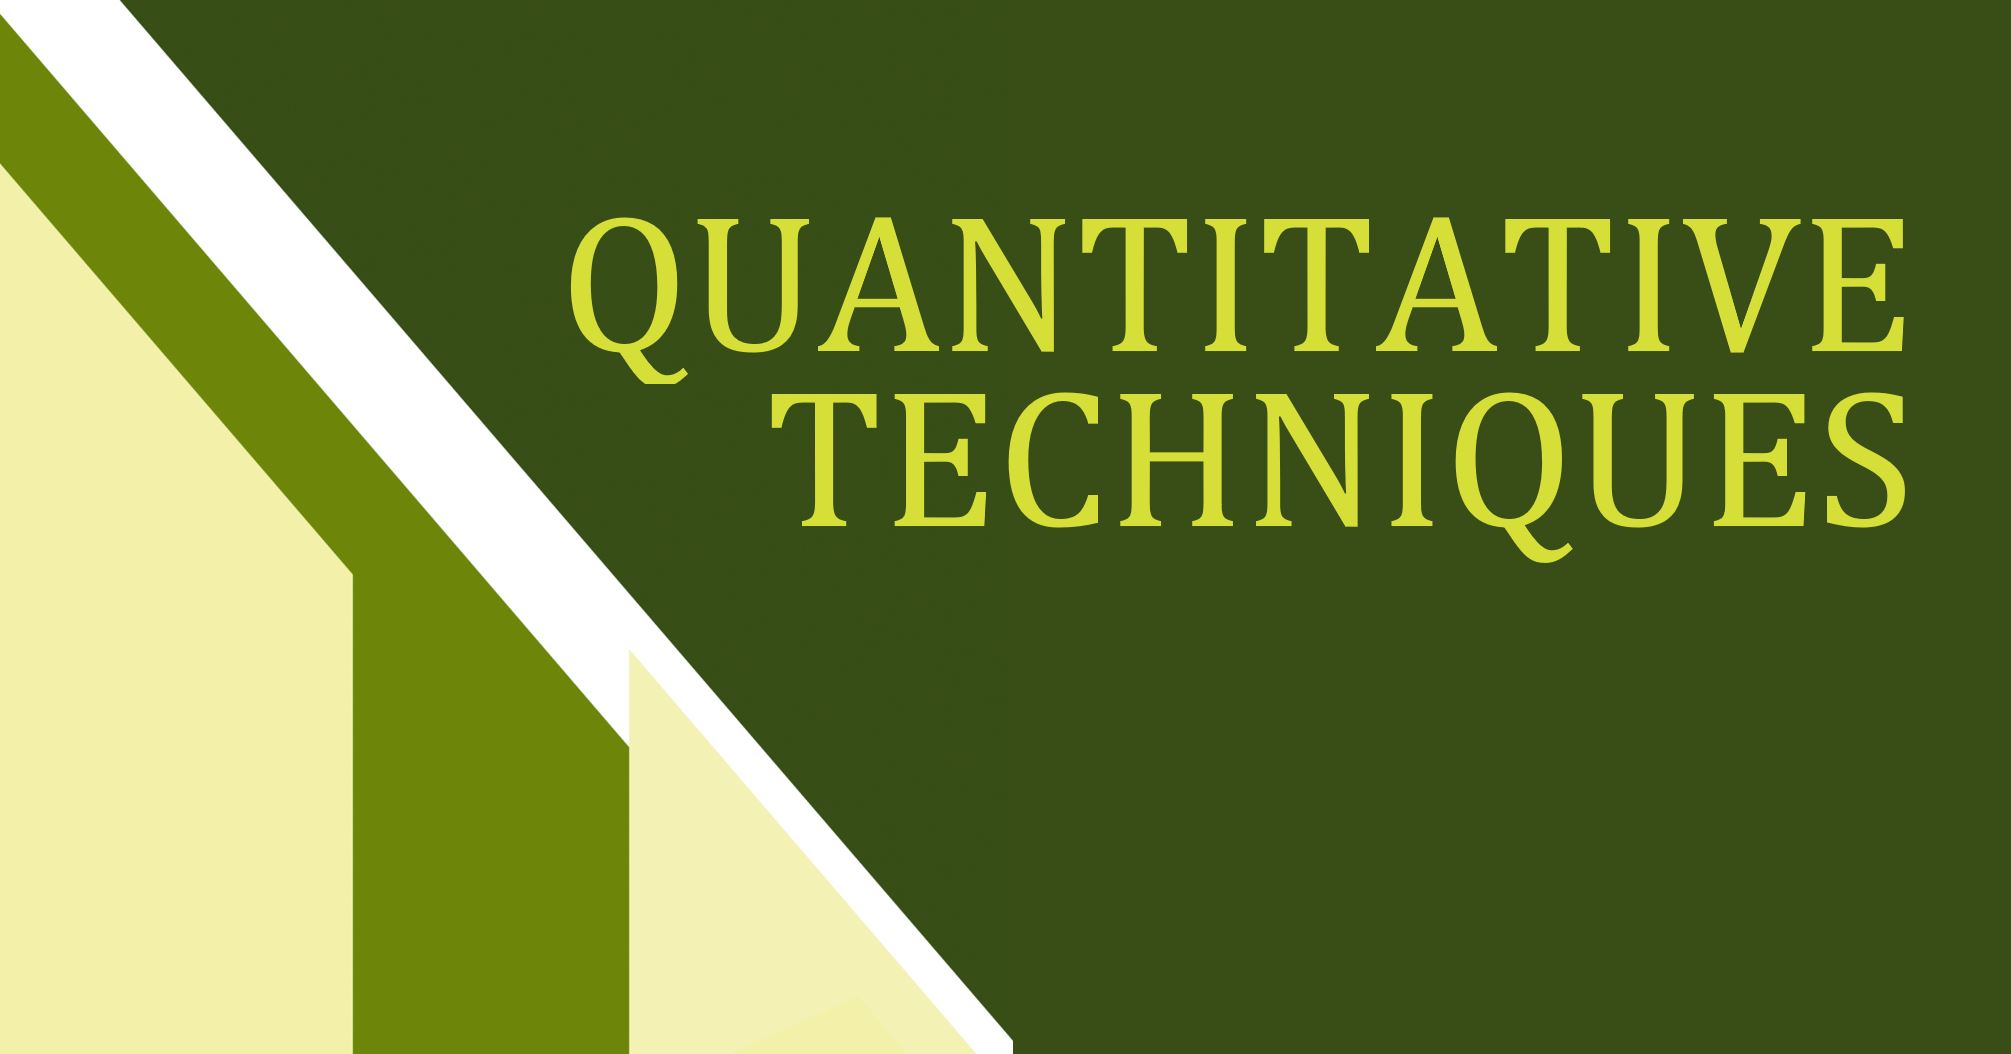 A1: Quantitative Techniques